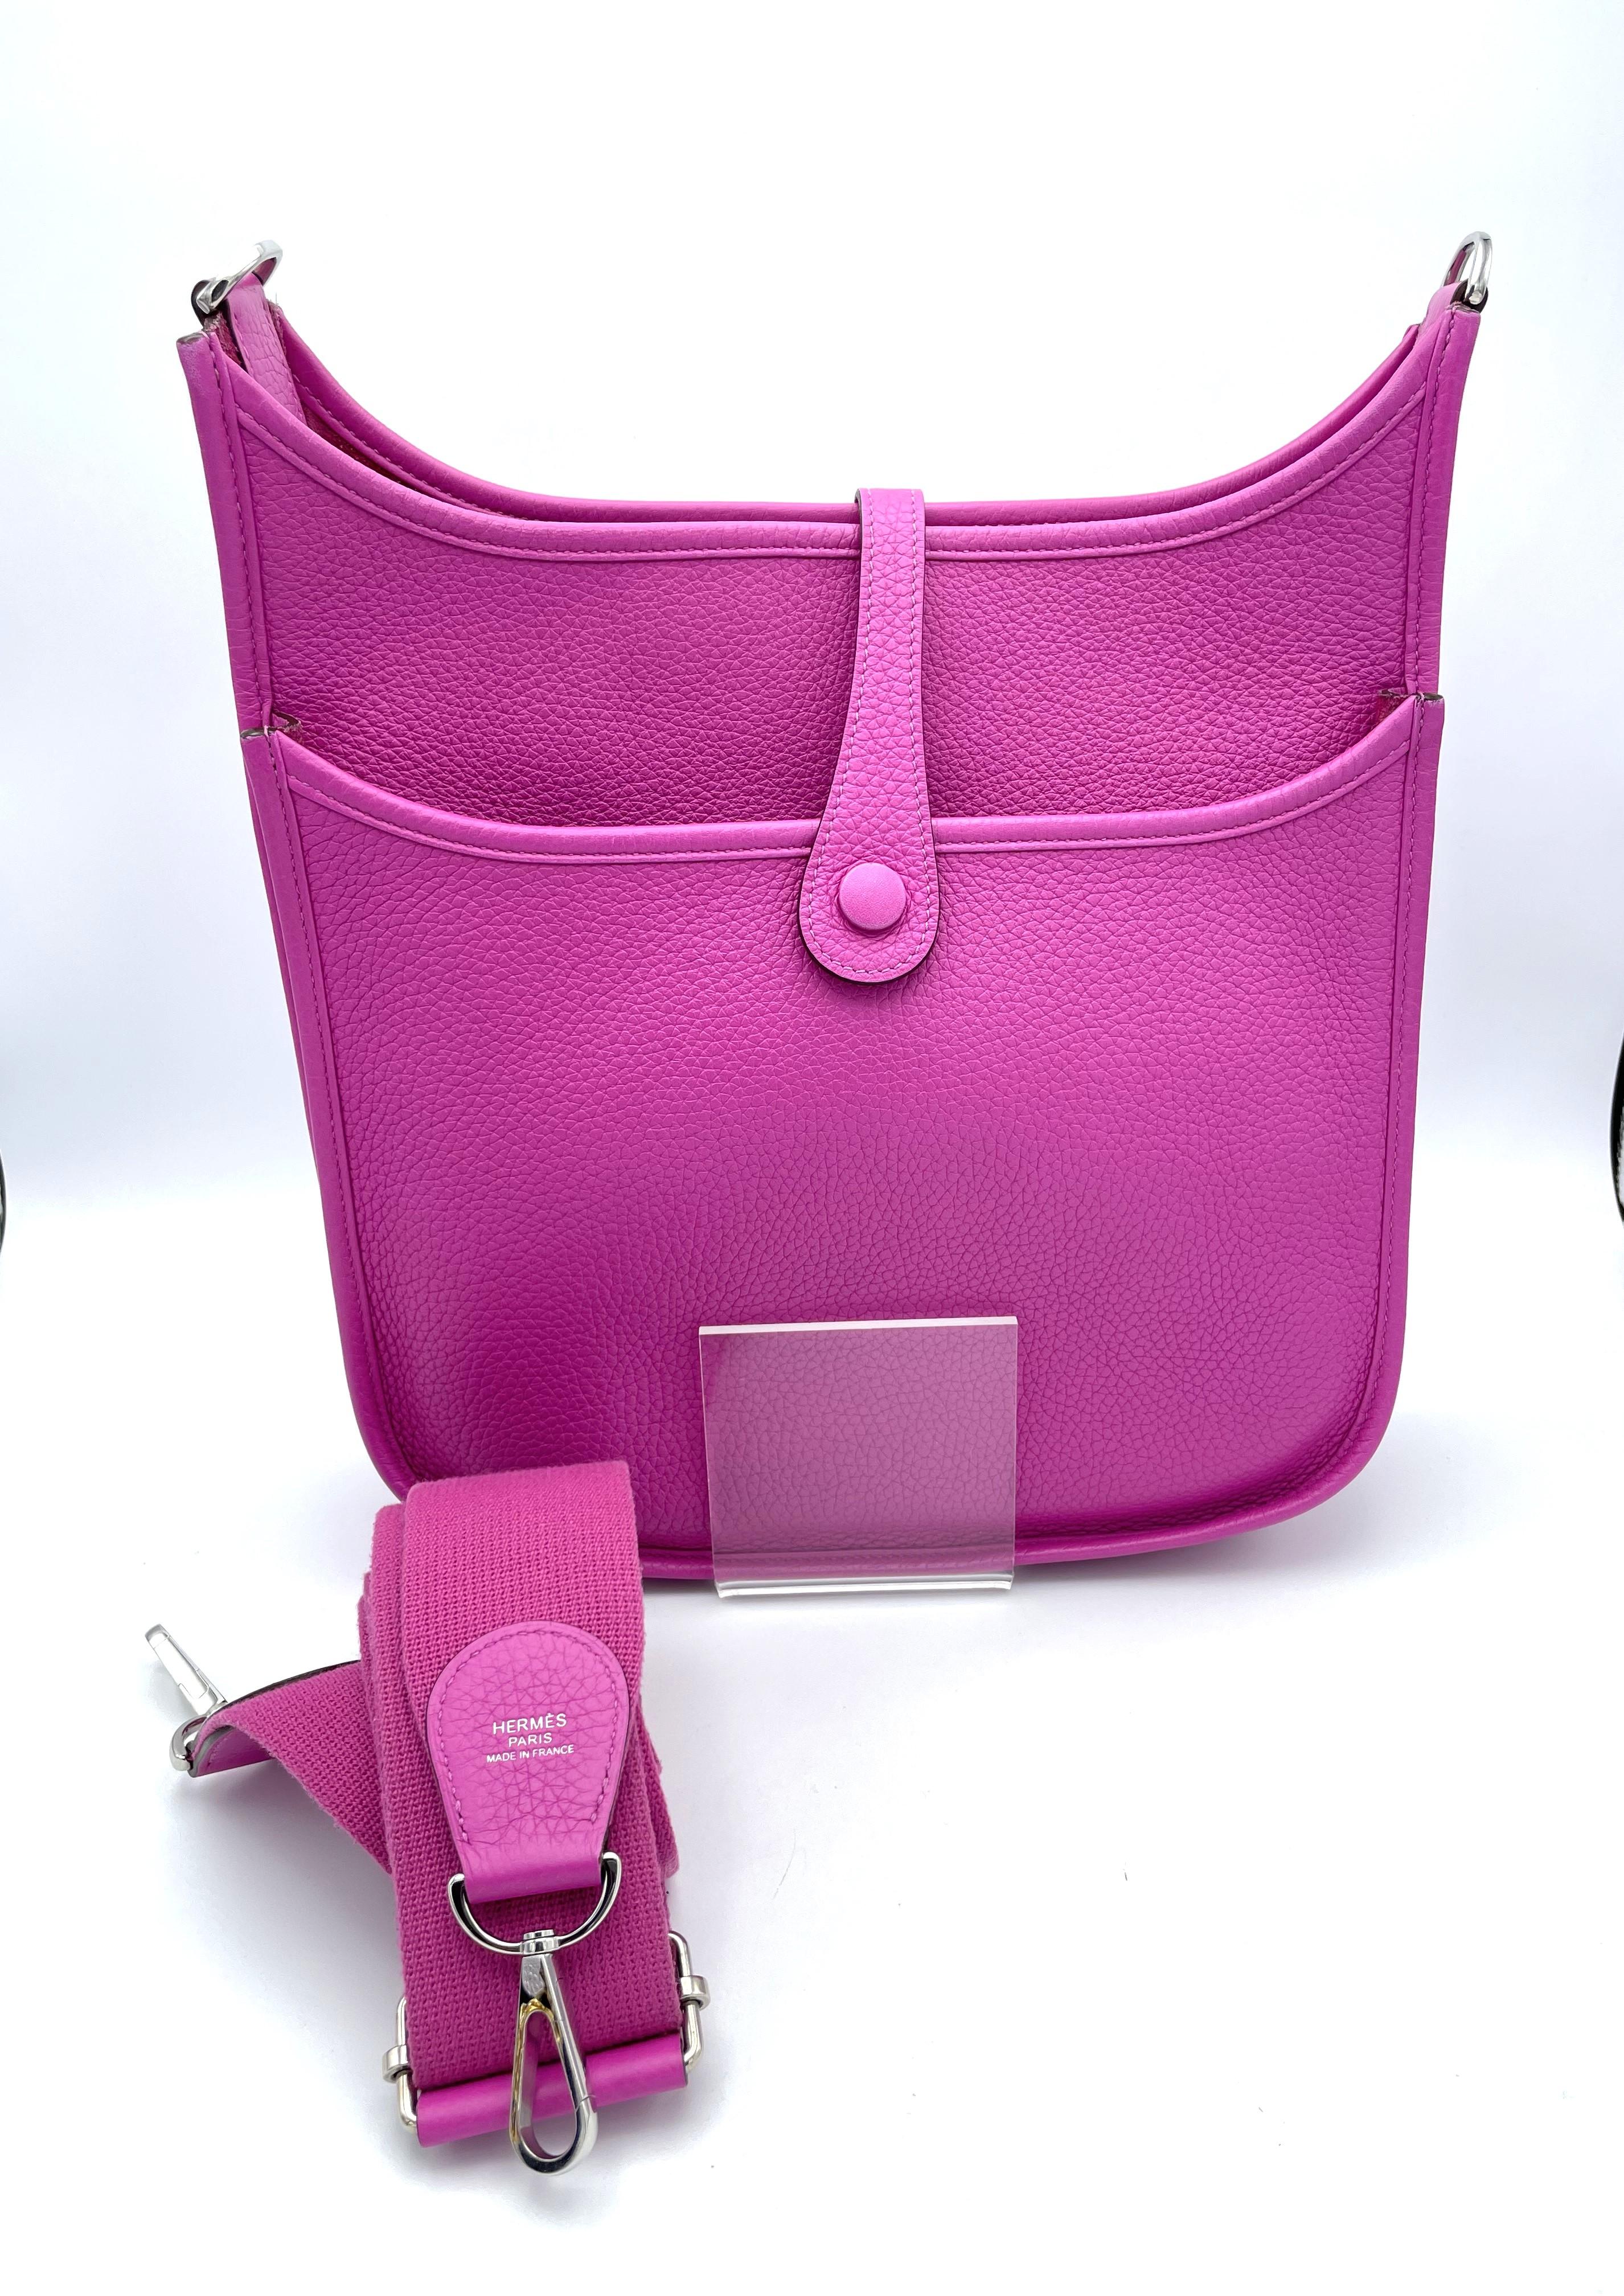 Women's or Men's HERMES EVELYNE III PM SHOULDER BAG pink Clemence leather, silber hardware C=2018 For Sale